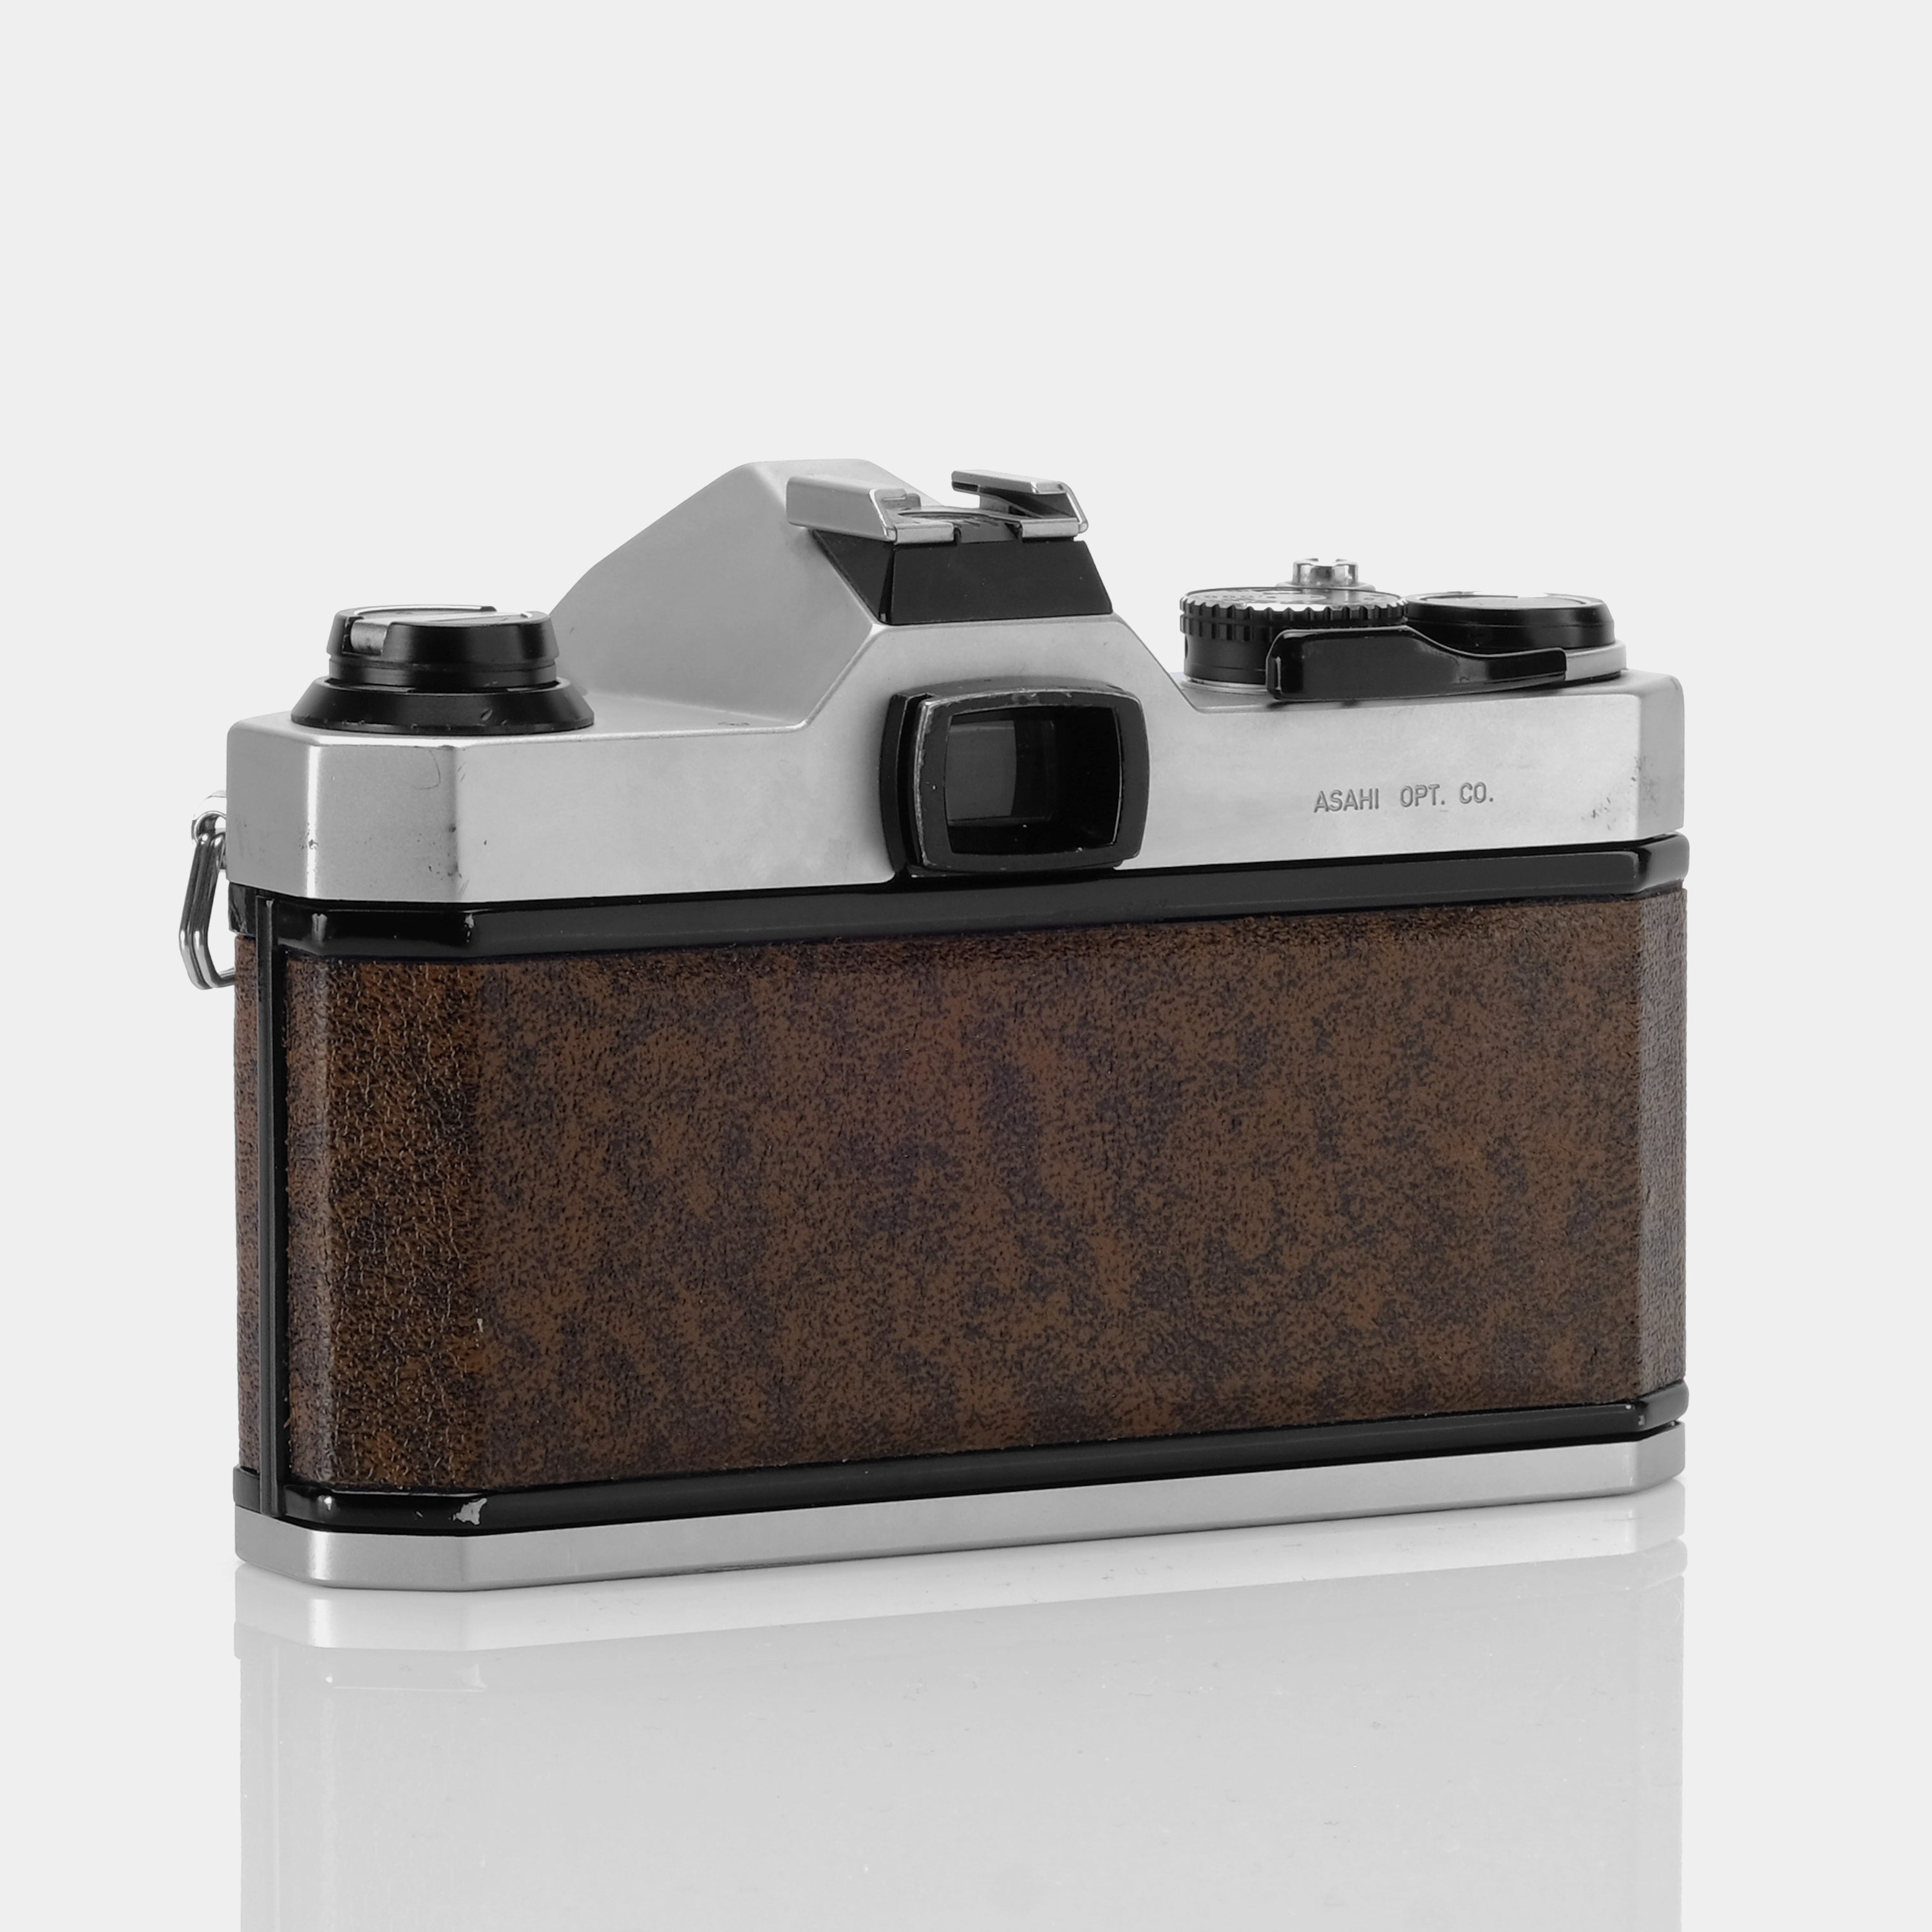 Pentax K1000 SE 35mm SLR Film Camera